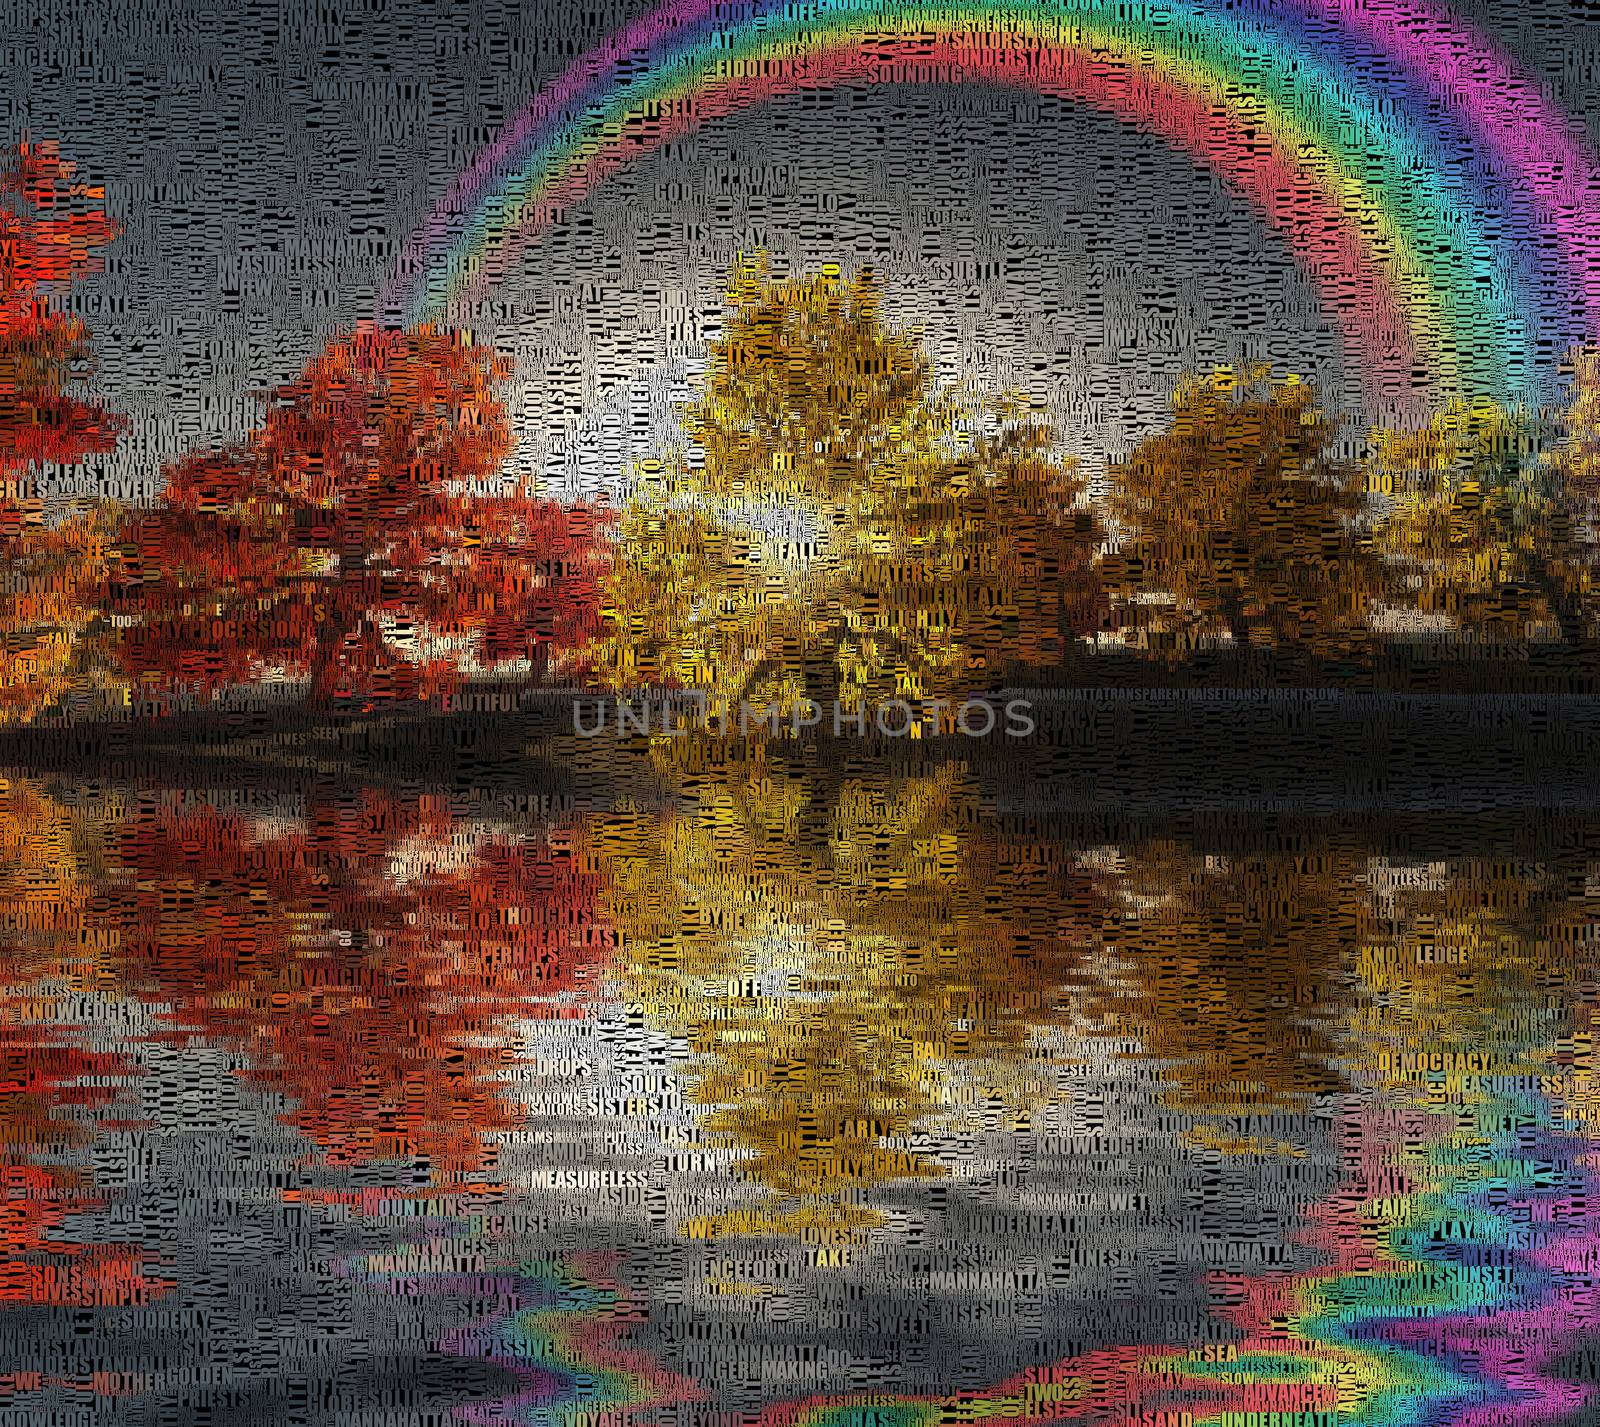 Autumn rainbow by applesstock